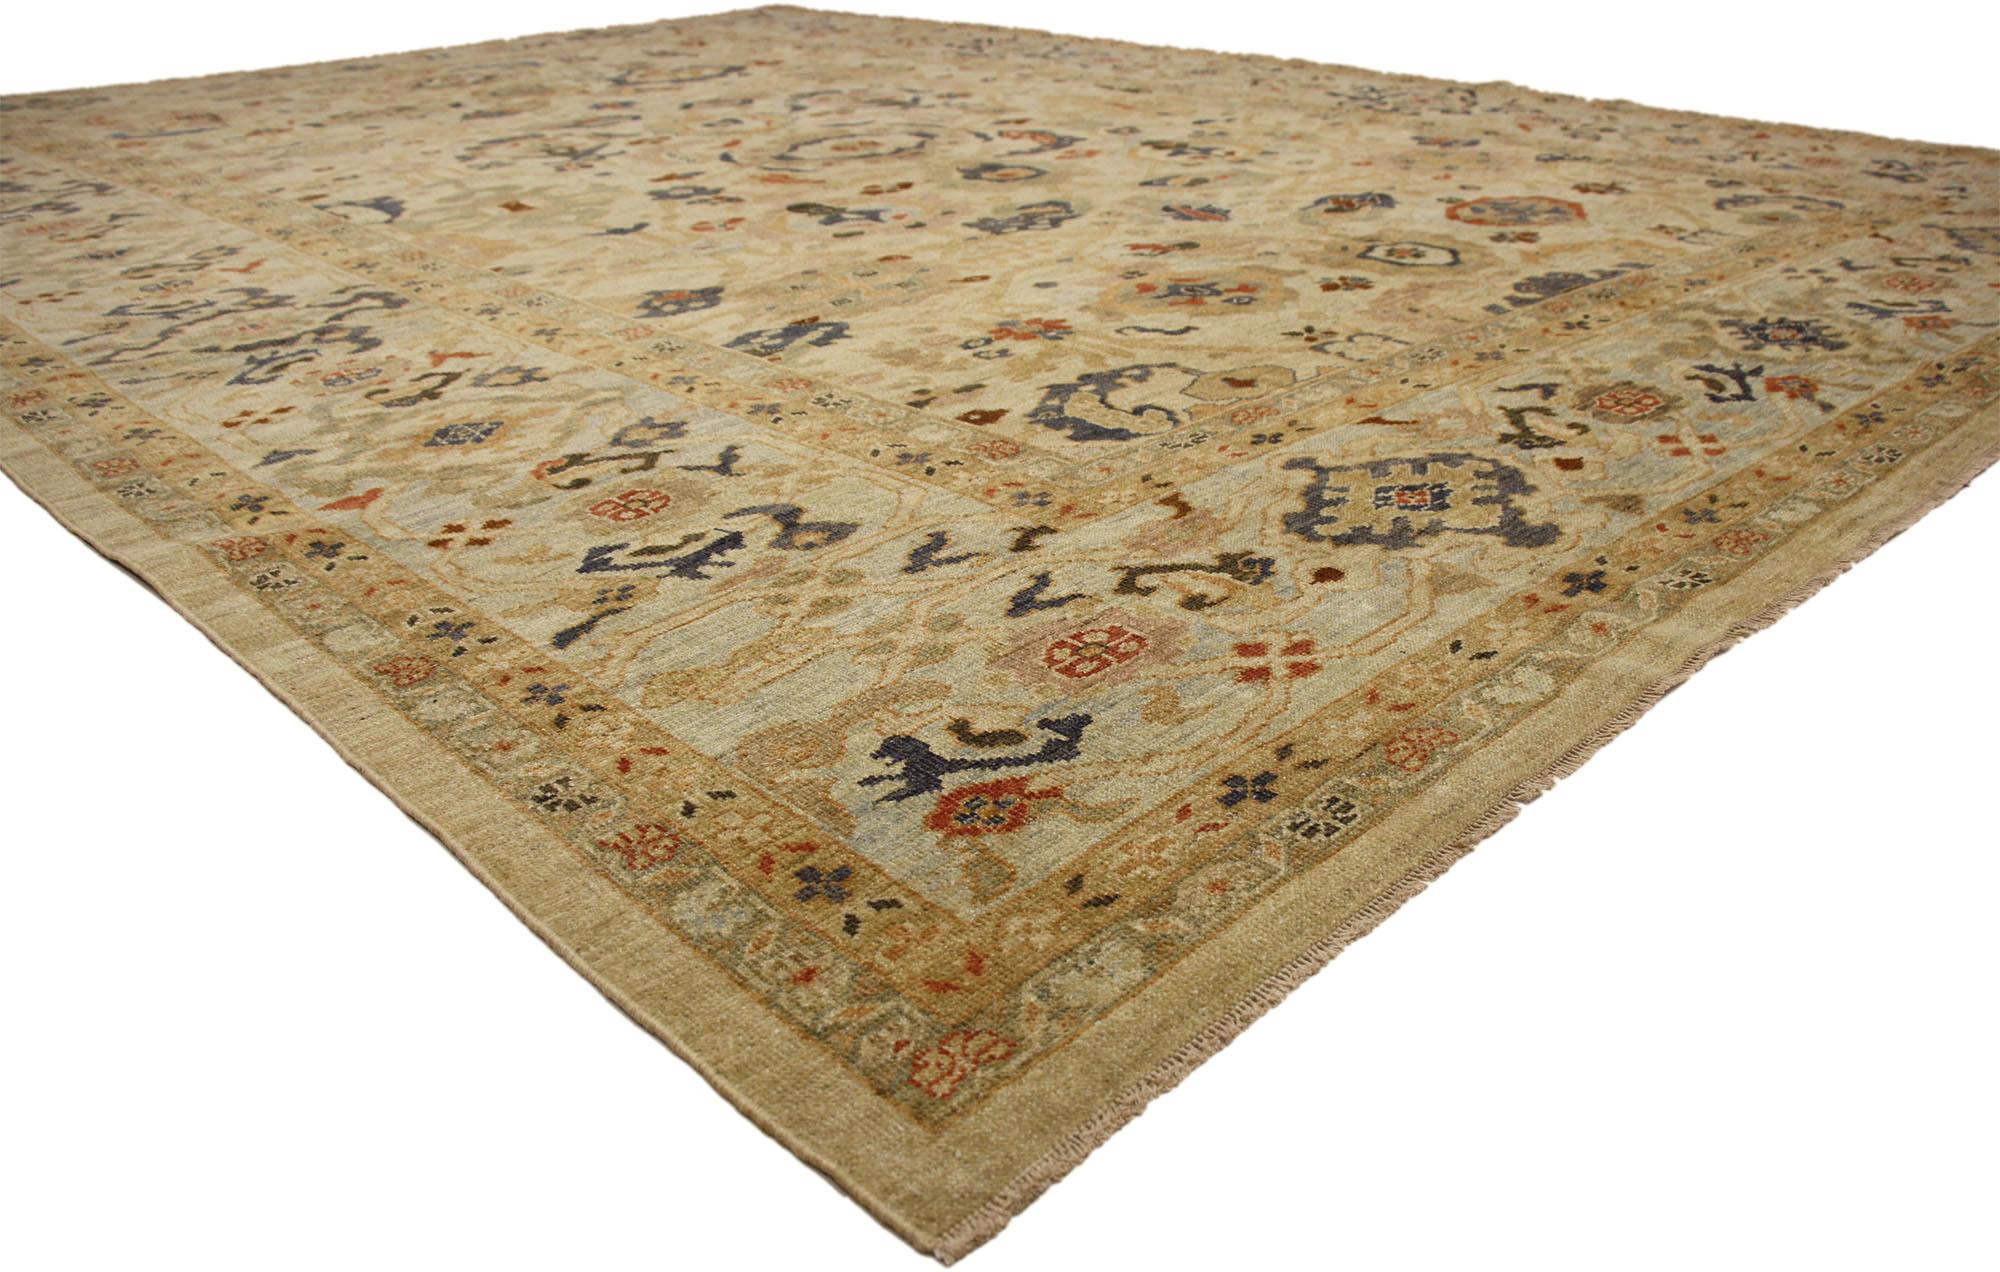 60711 Persischer Sultanabad-Teppich im neoklassischen Stil mit föderaler Farbpalette. Dieser moderne persische Sultanabad-Teppich im Übergangsstil mit harmonischen Farbtönen ist raffiniert und subtil, ohne dabei an Eleganz einzubüßen. Der persische